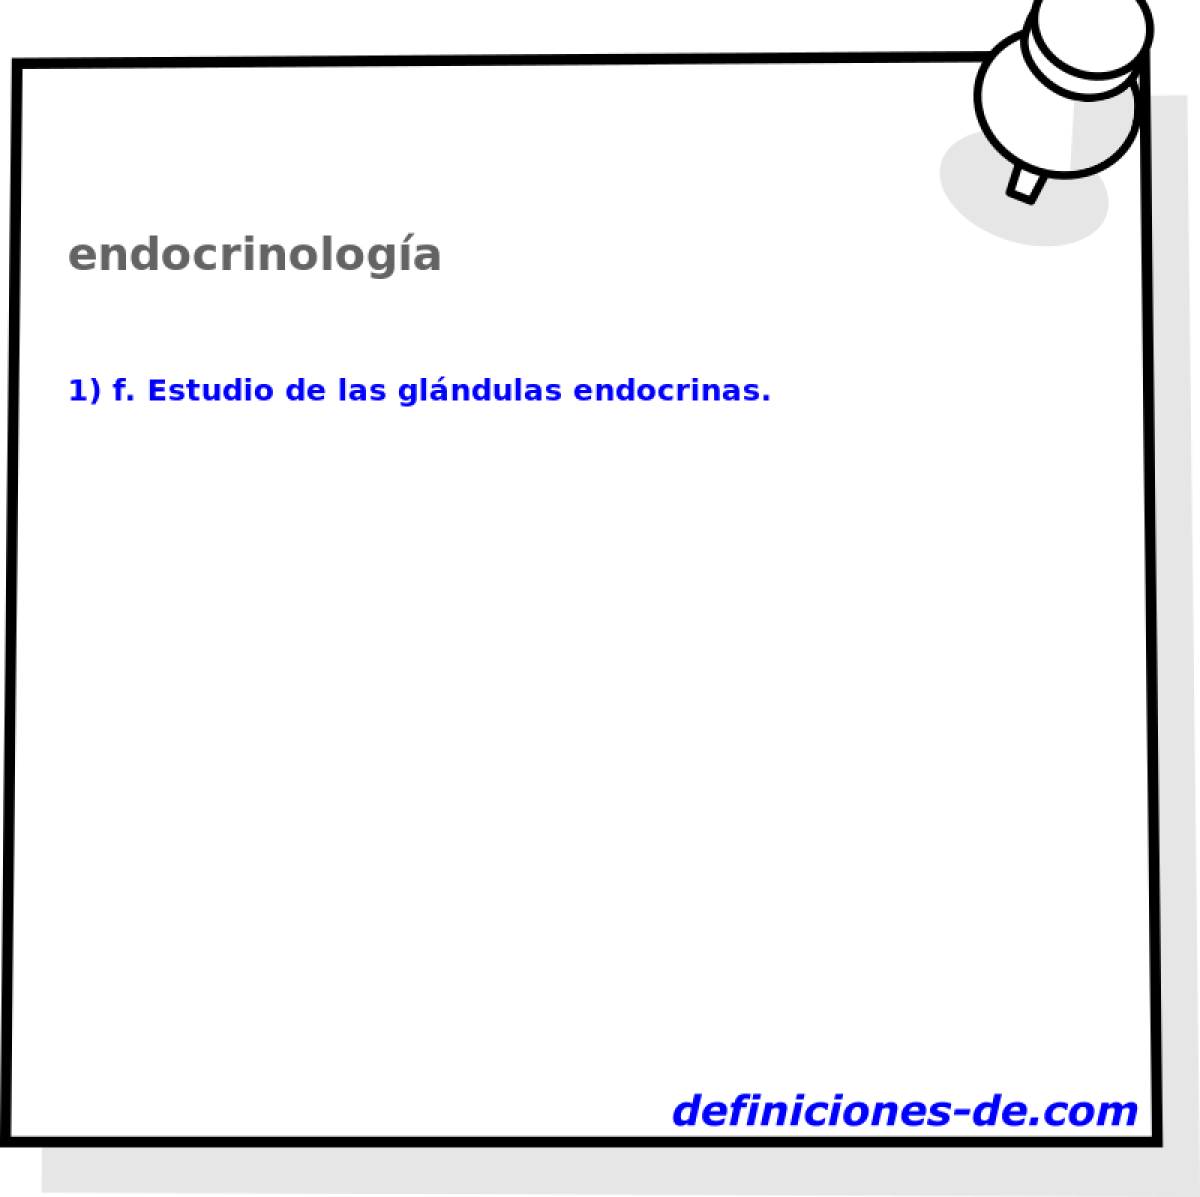 endocrinologa 